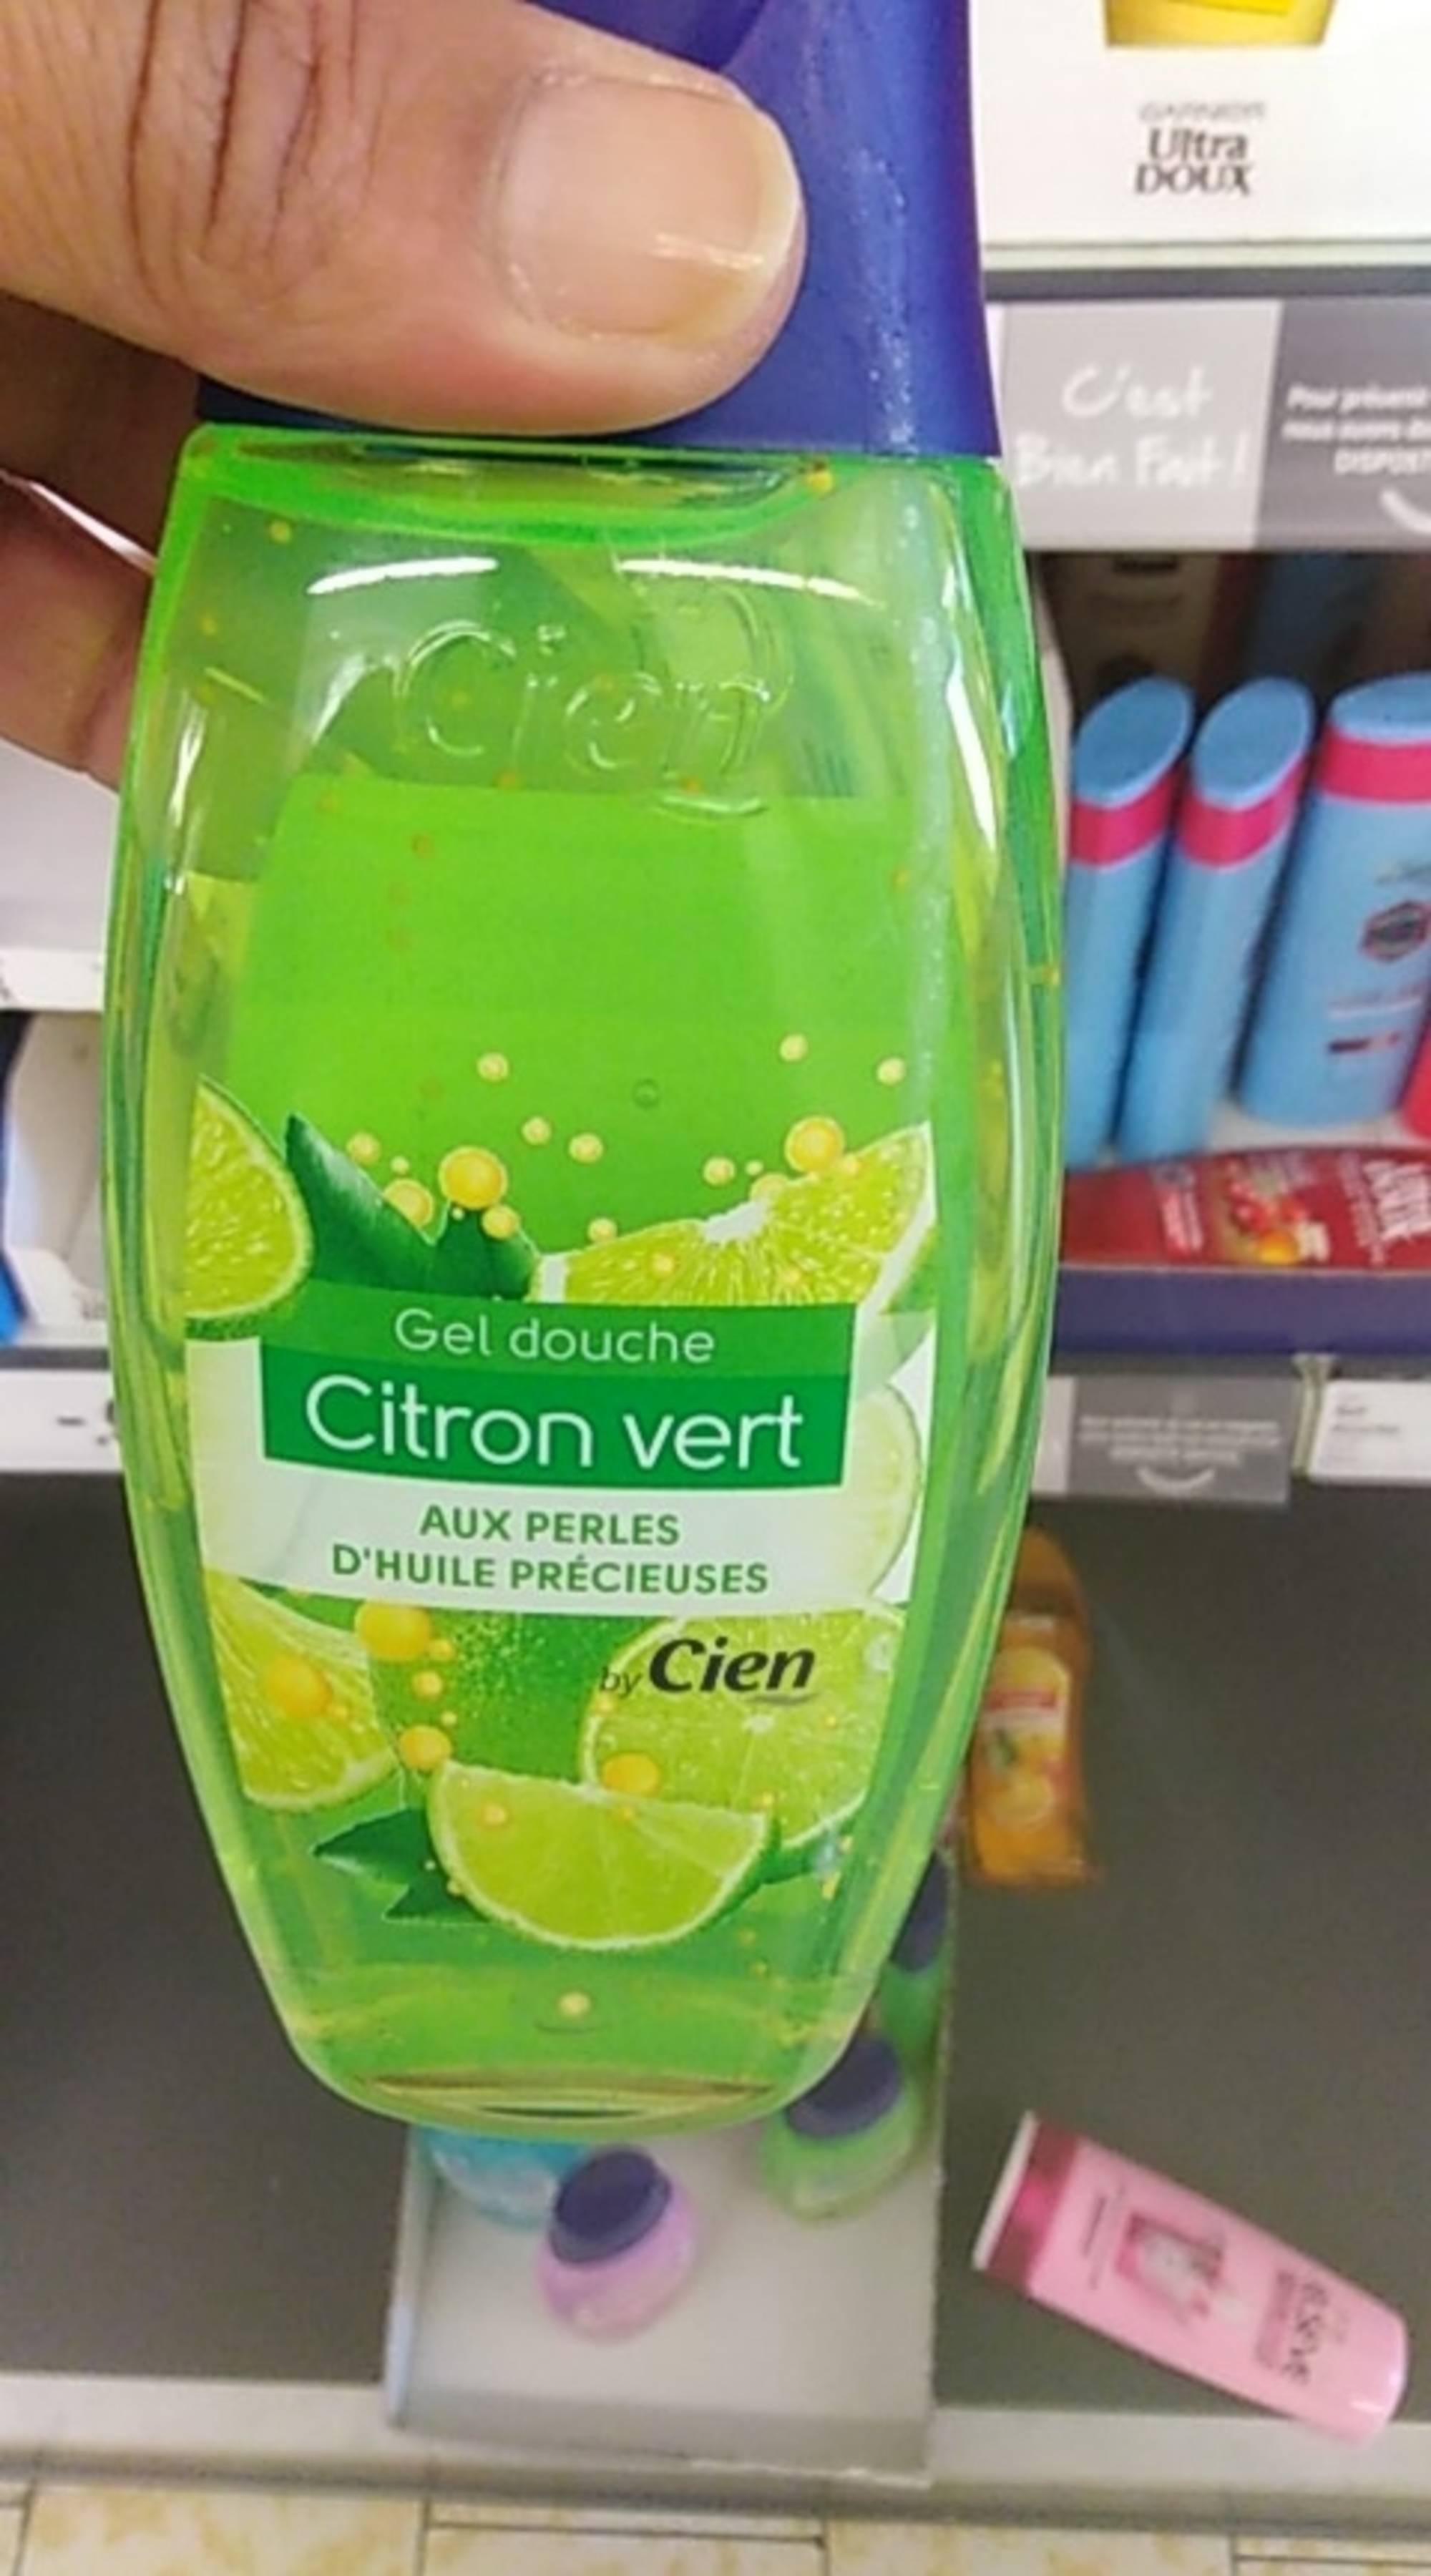 CIEN - Citron vert - Gel douche